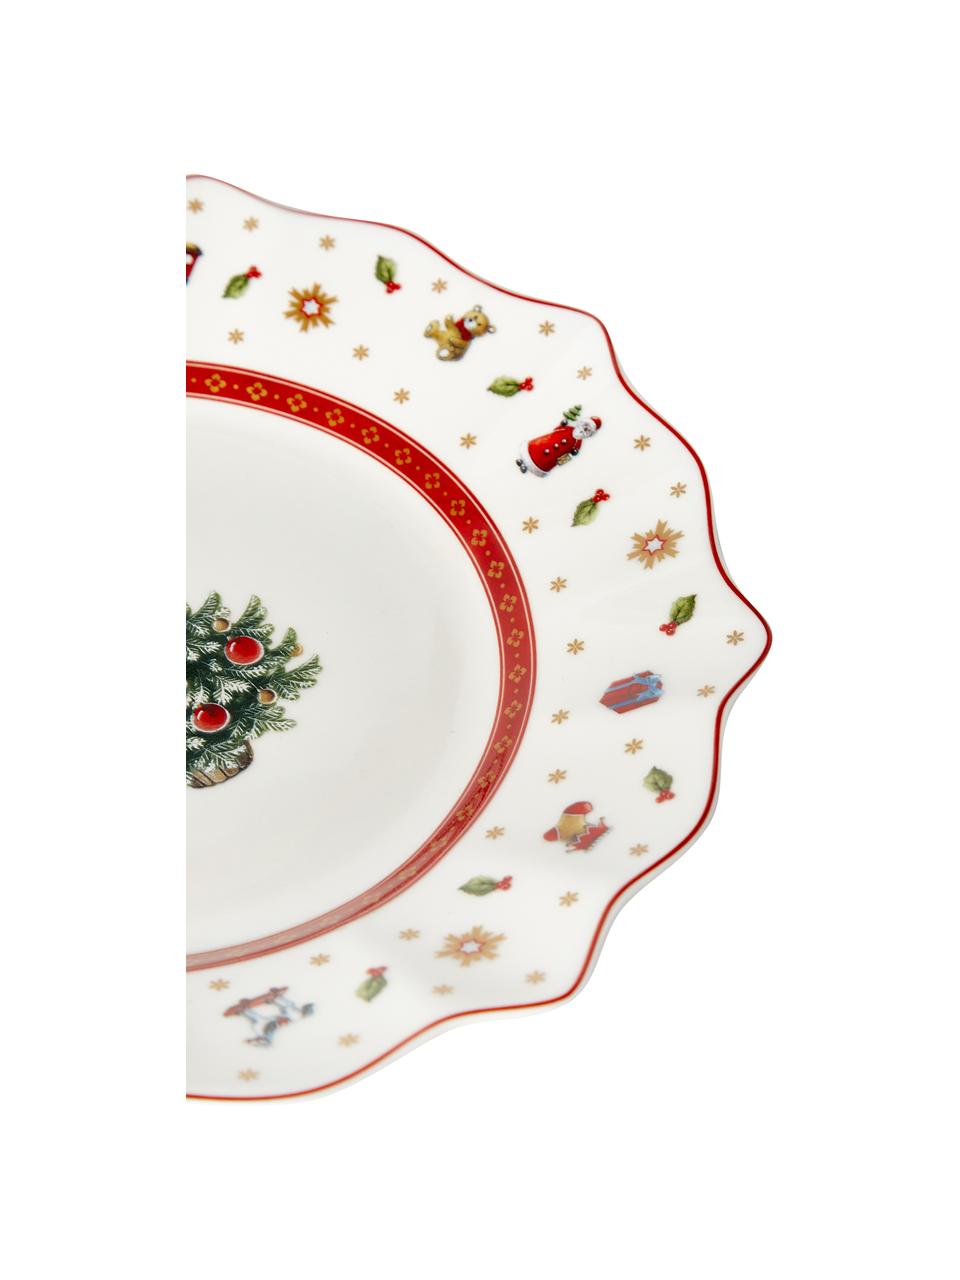 Porcelánové snídaňové talíře Toy's Delight, 2 ks, Prémiový porcelán, Červená, bílá, se vzorem, Ø 24 cm